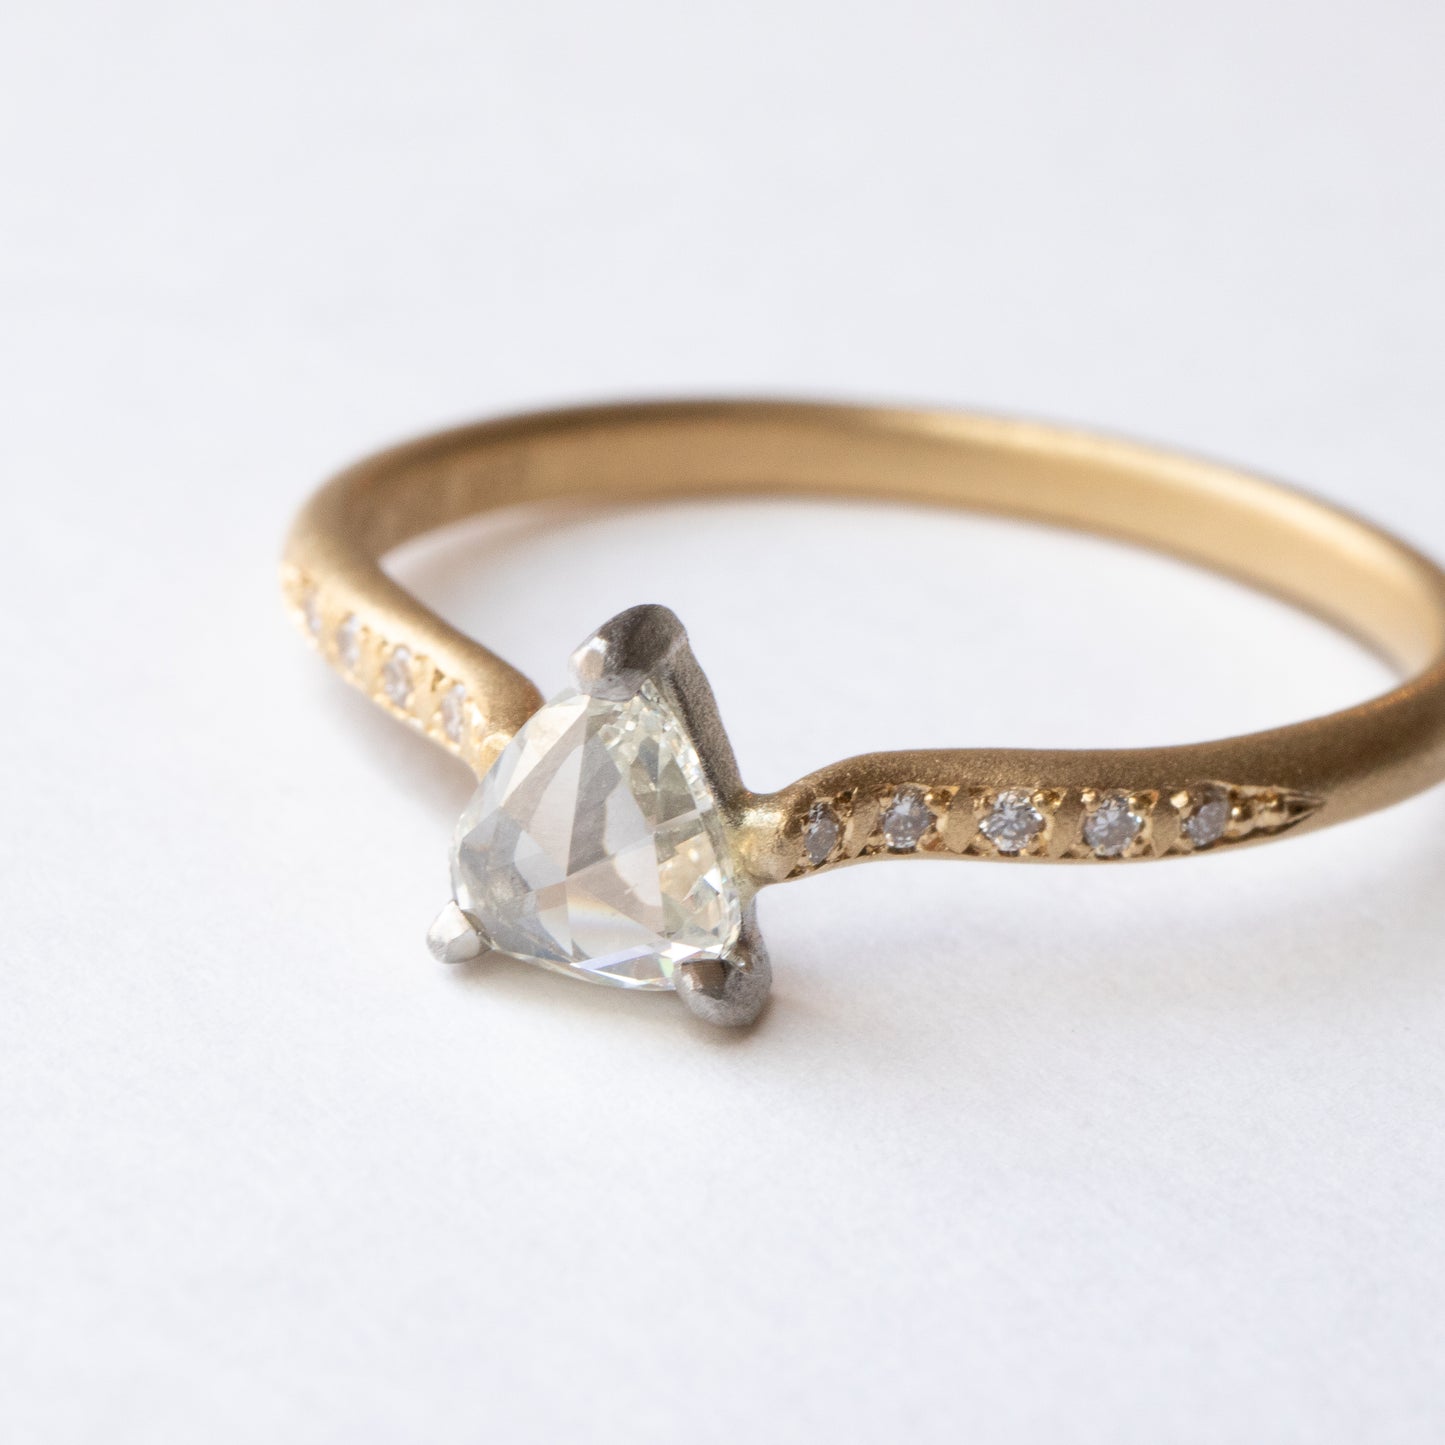 爪形戒指 - 钻石 -